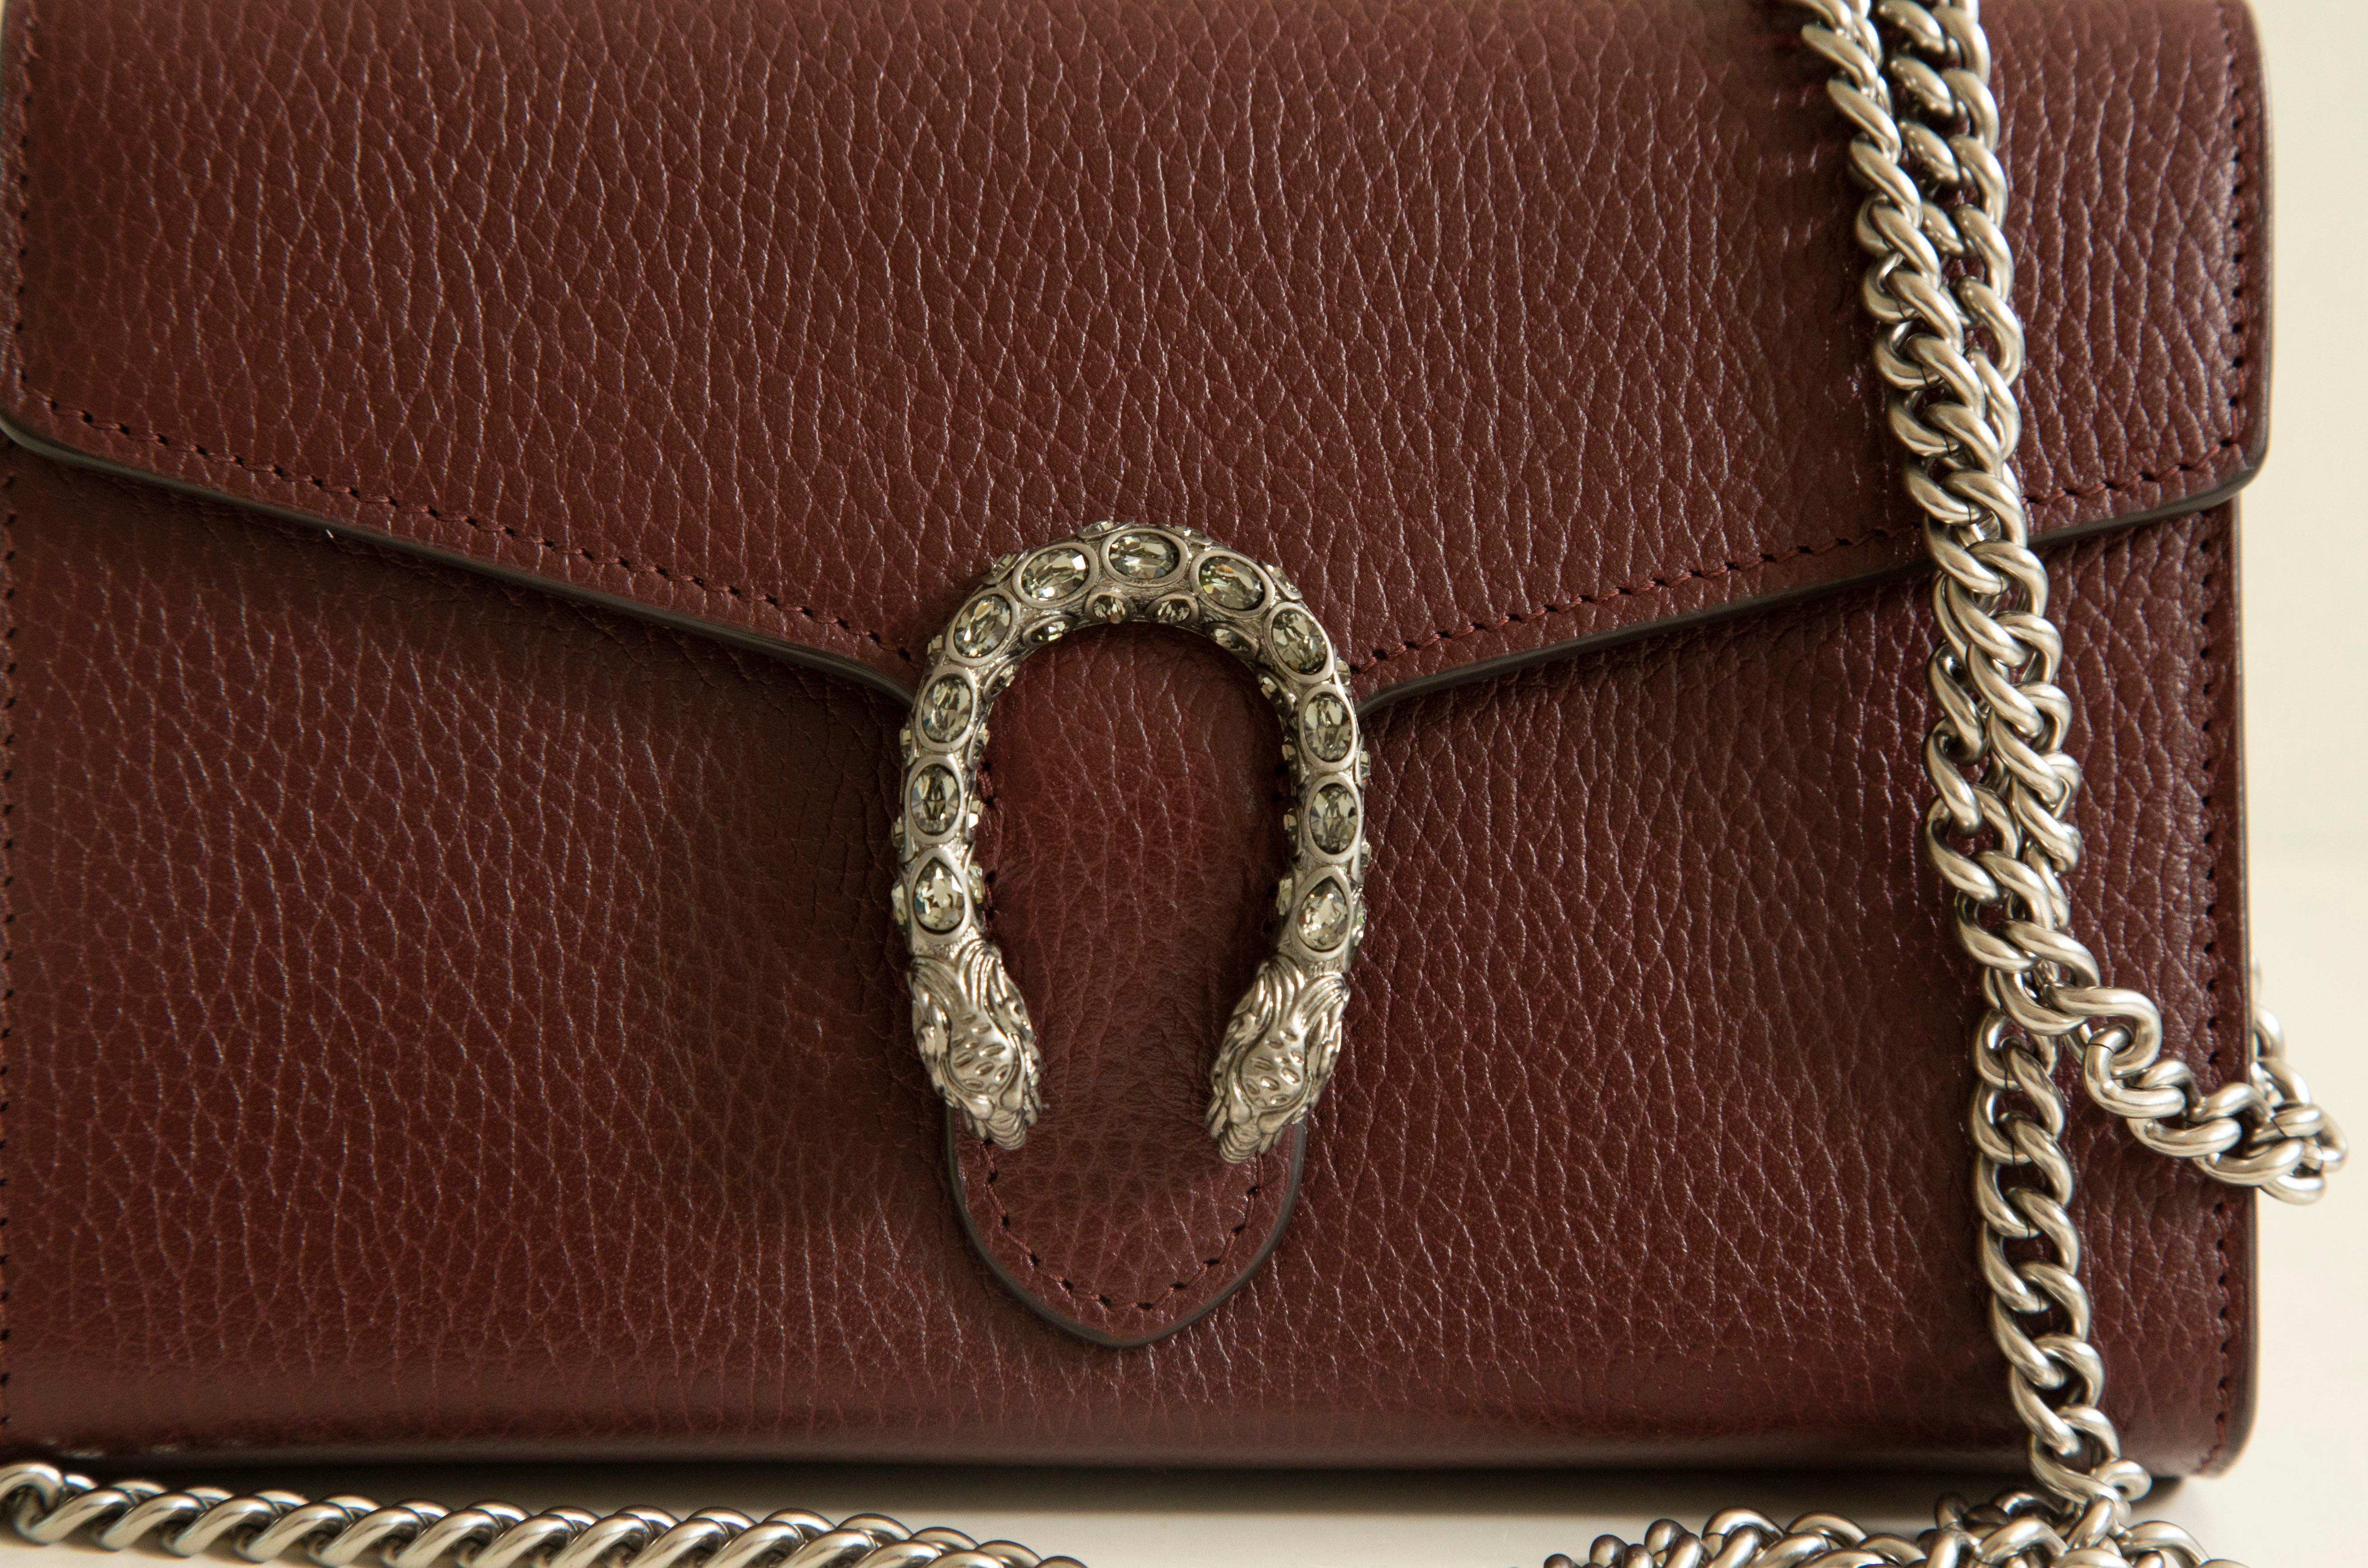 Die Gucci Dionysus Leder-Mini-Kettentasche aus bordeauxfarbenem Leder mit 
alte silberfarbene Beschläge. Die Tasche ist mit einem  Sporenverschluss mit Tigerkopf - ein einzigartiges Detail, das auf den griechischen Gott Dionysos verweist, der der